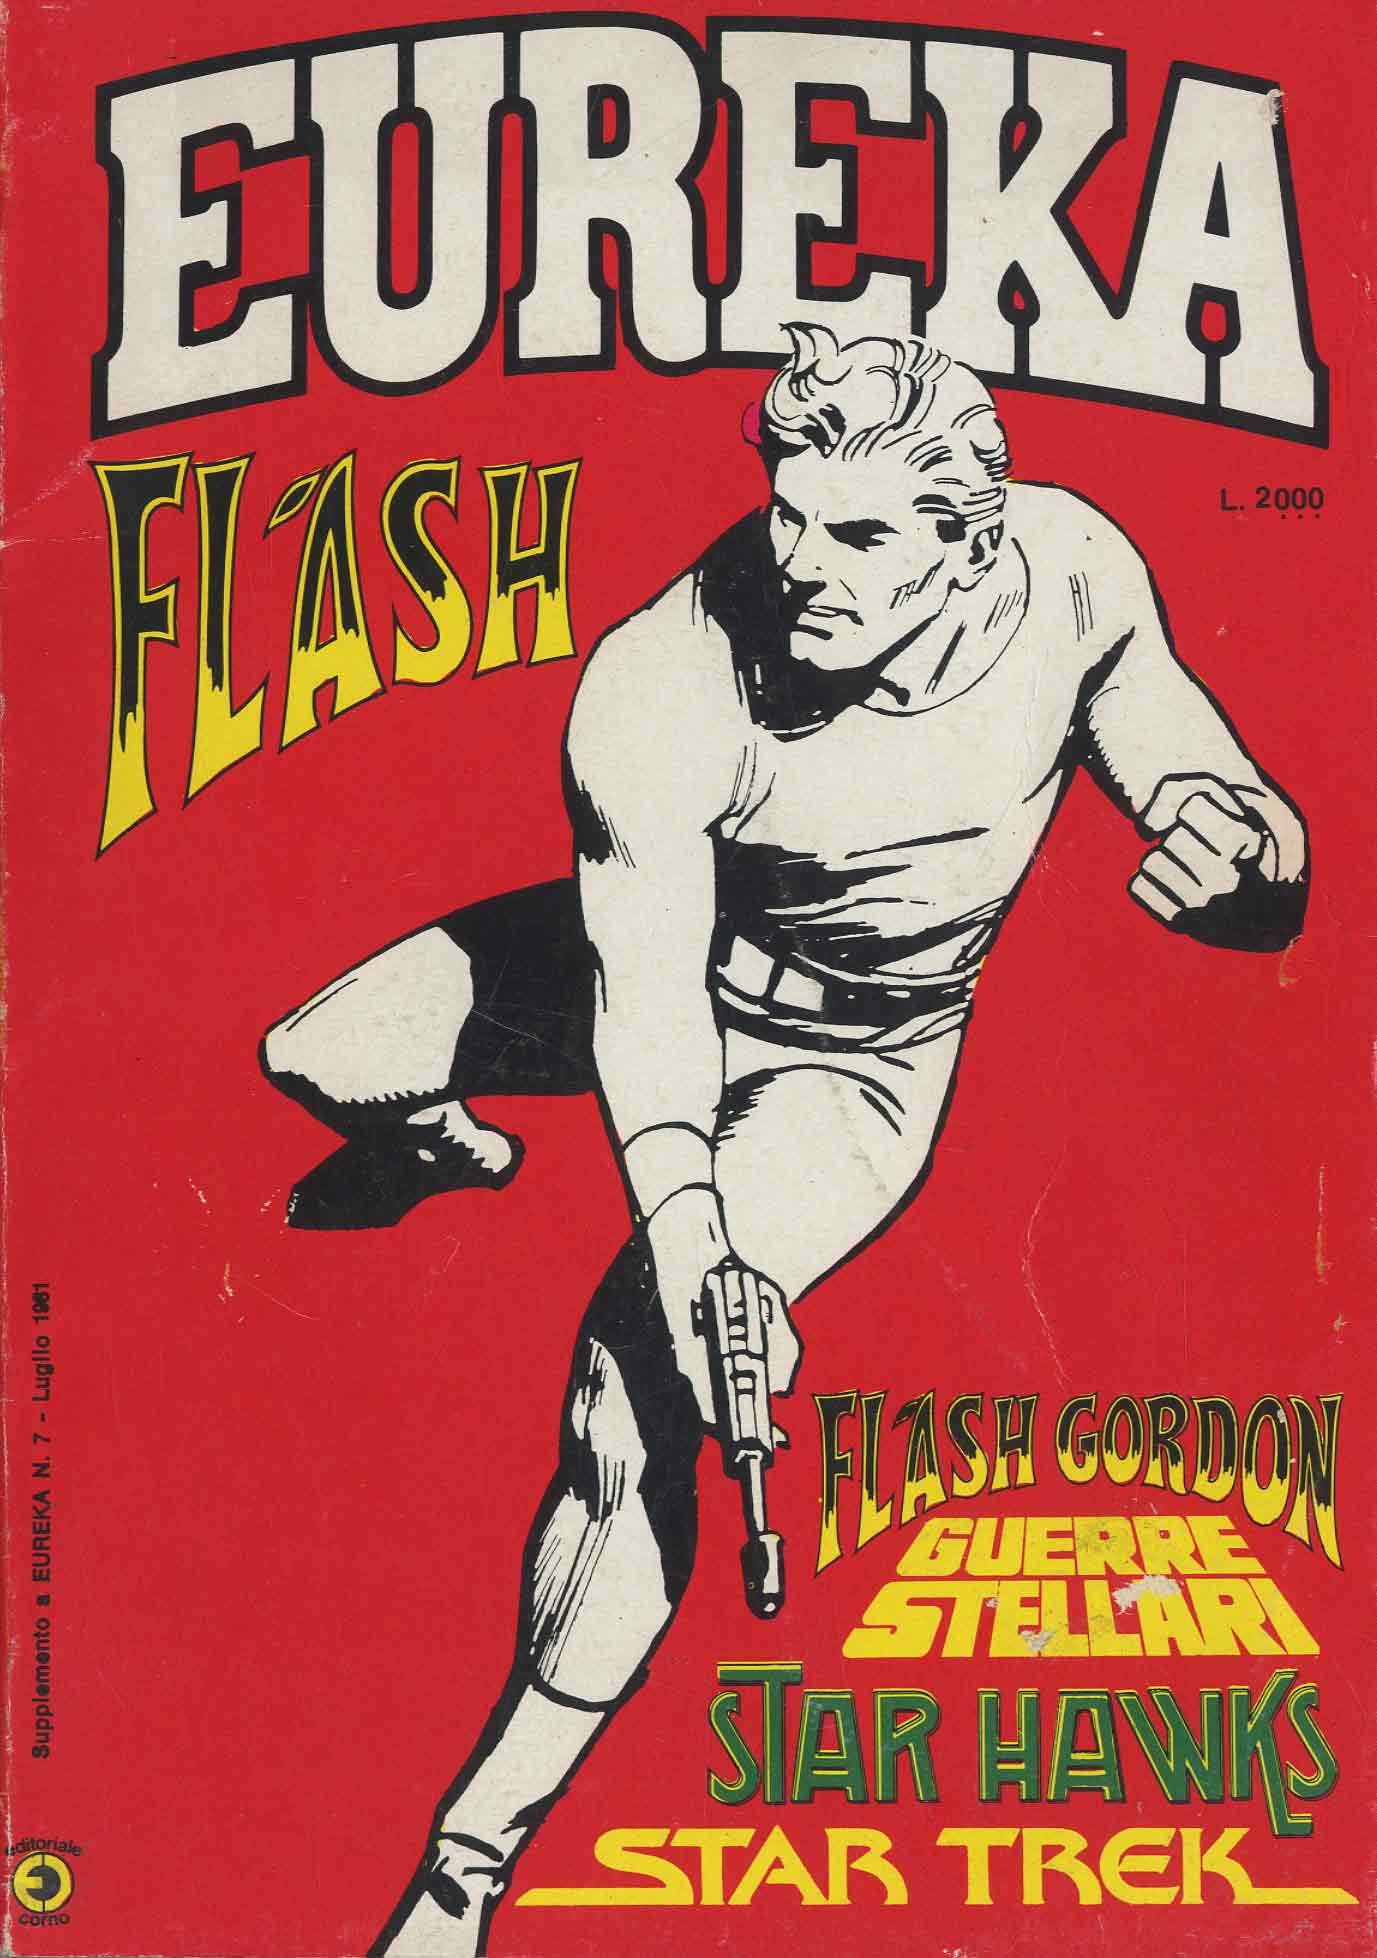 1981 Eureka Flash